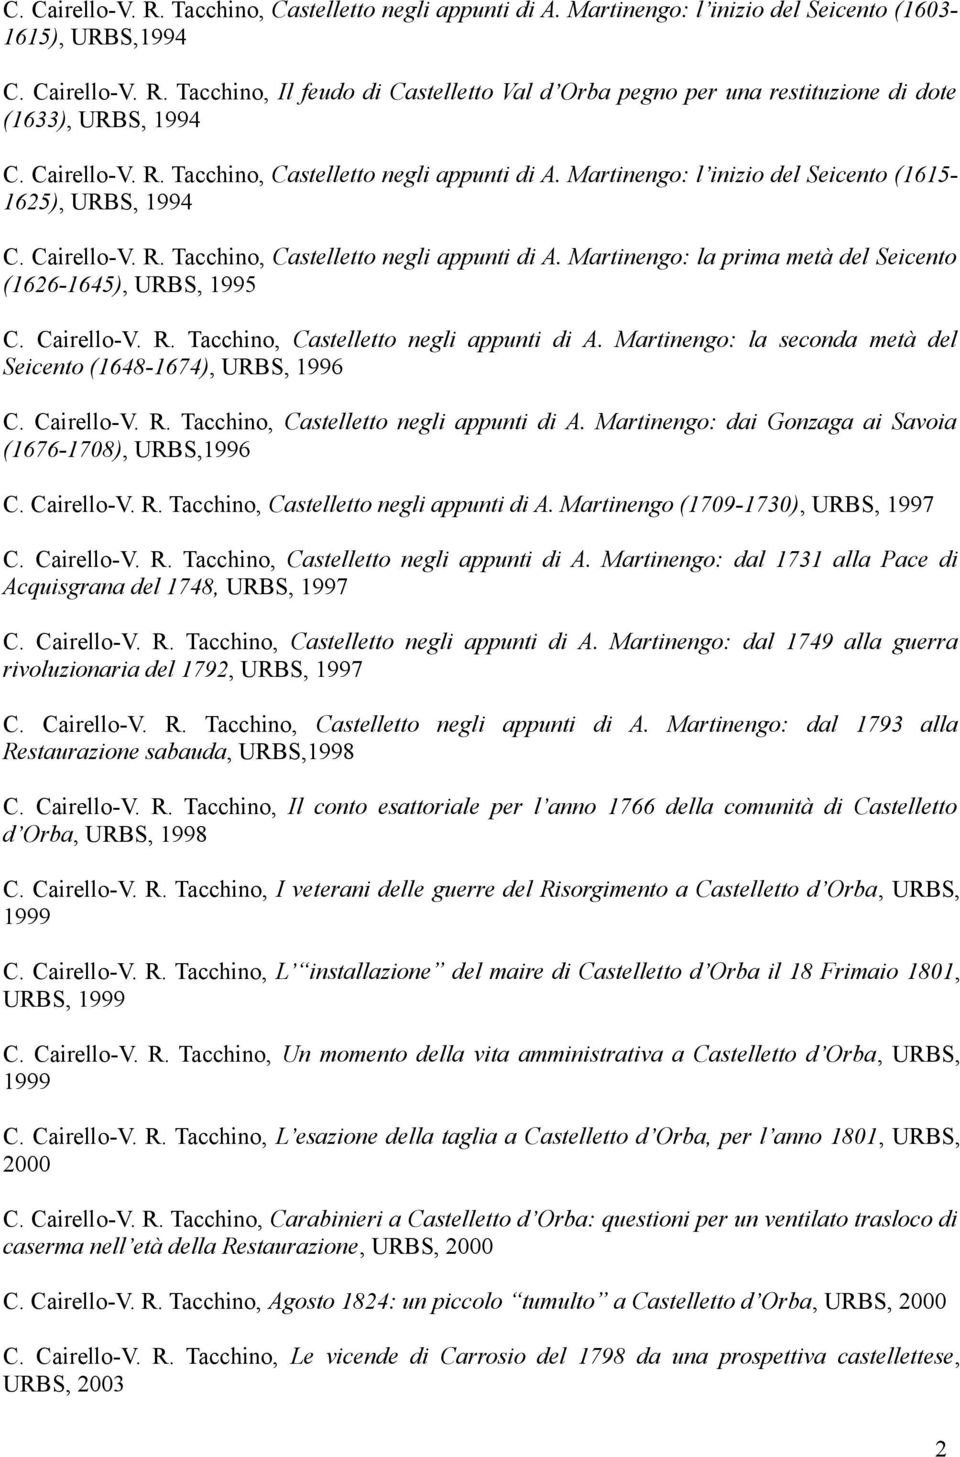 Cairello-V. R. Tacchino, Castelletto negli appunti di A. Martinengo: la seconda metà del Seicento (1648-1674), URBS, 1996 C. Cairello-V. R. Tacchino, Castelletto negli appunti di A. Martinengo: dai Gonzaga ai Savoia (1676-1708), URBS,1996 C.